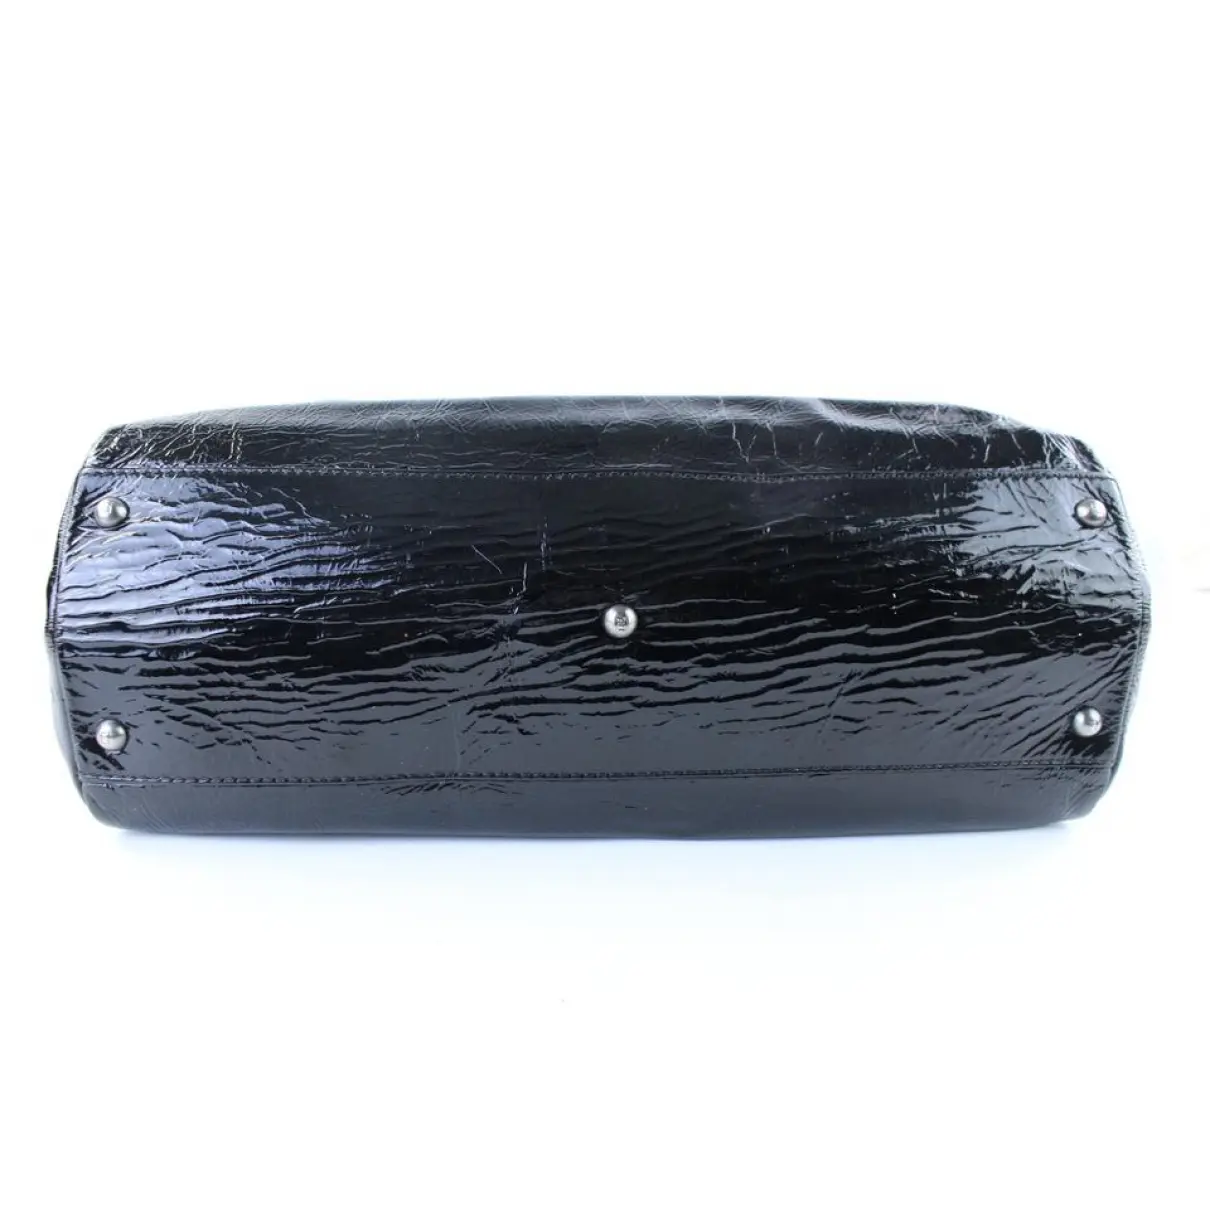 Peekaboo patent leather handbag Fendi